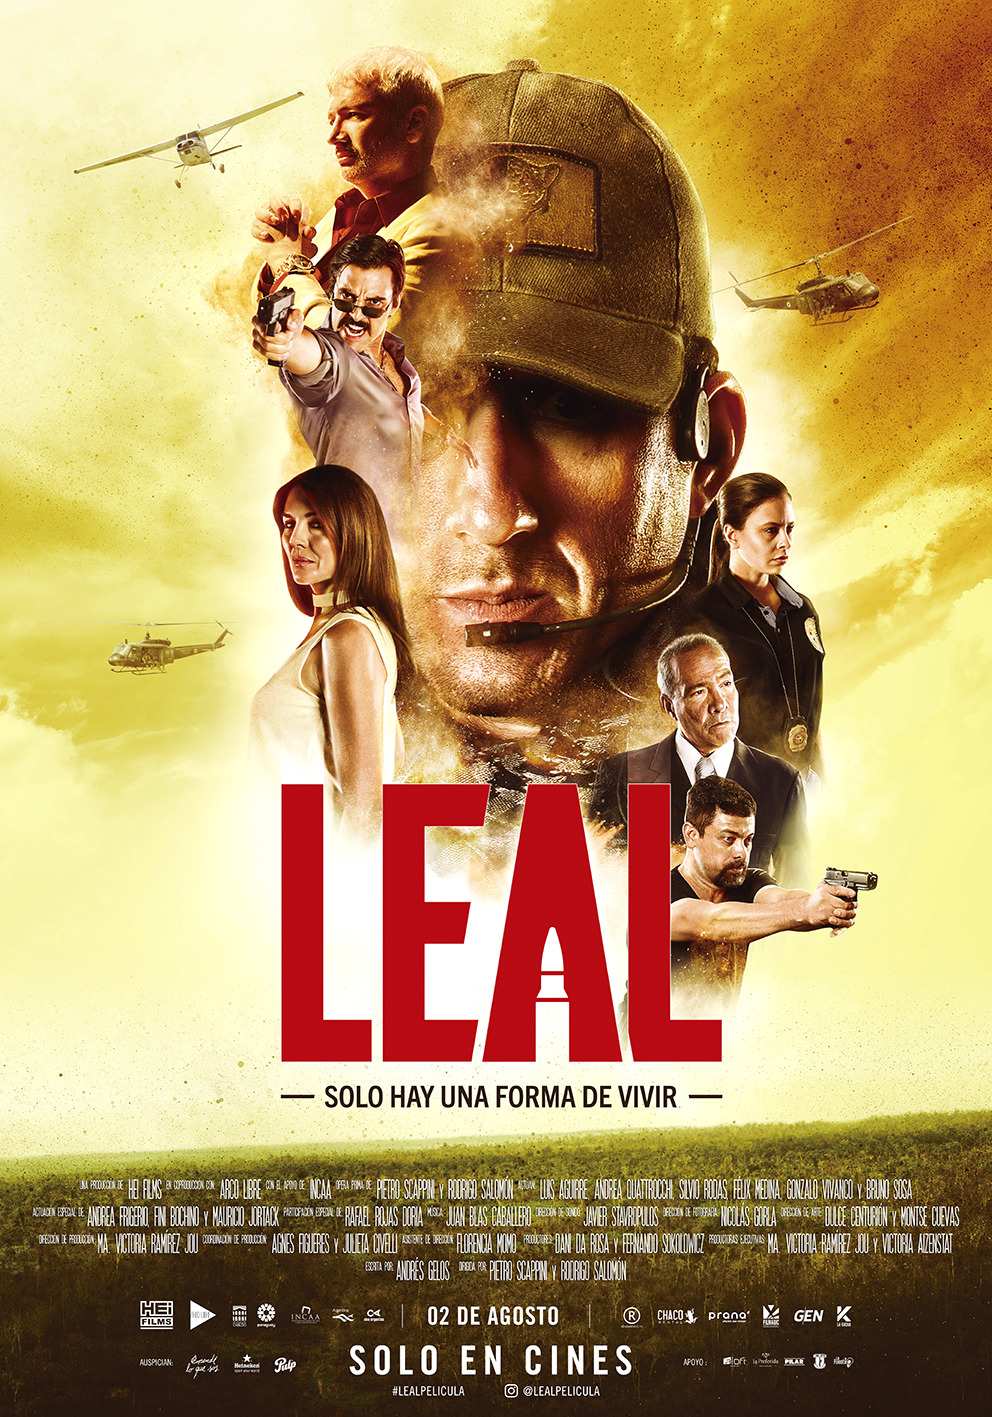 Extra Large Movie Poster Image for Leal, solo hay una forma de vivir 